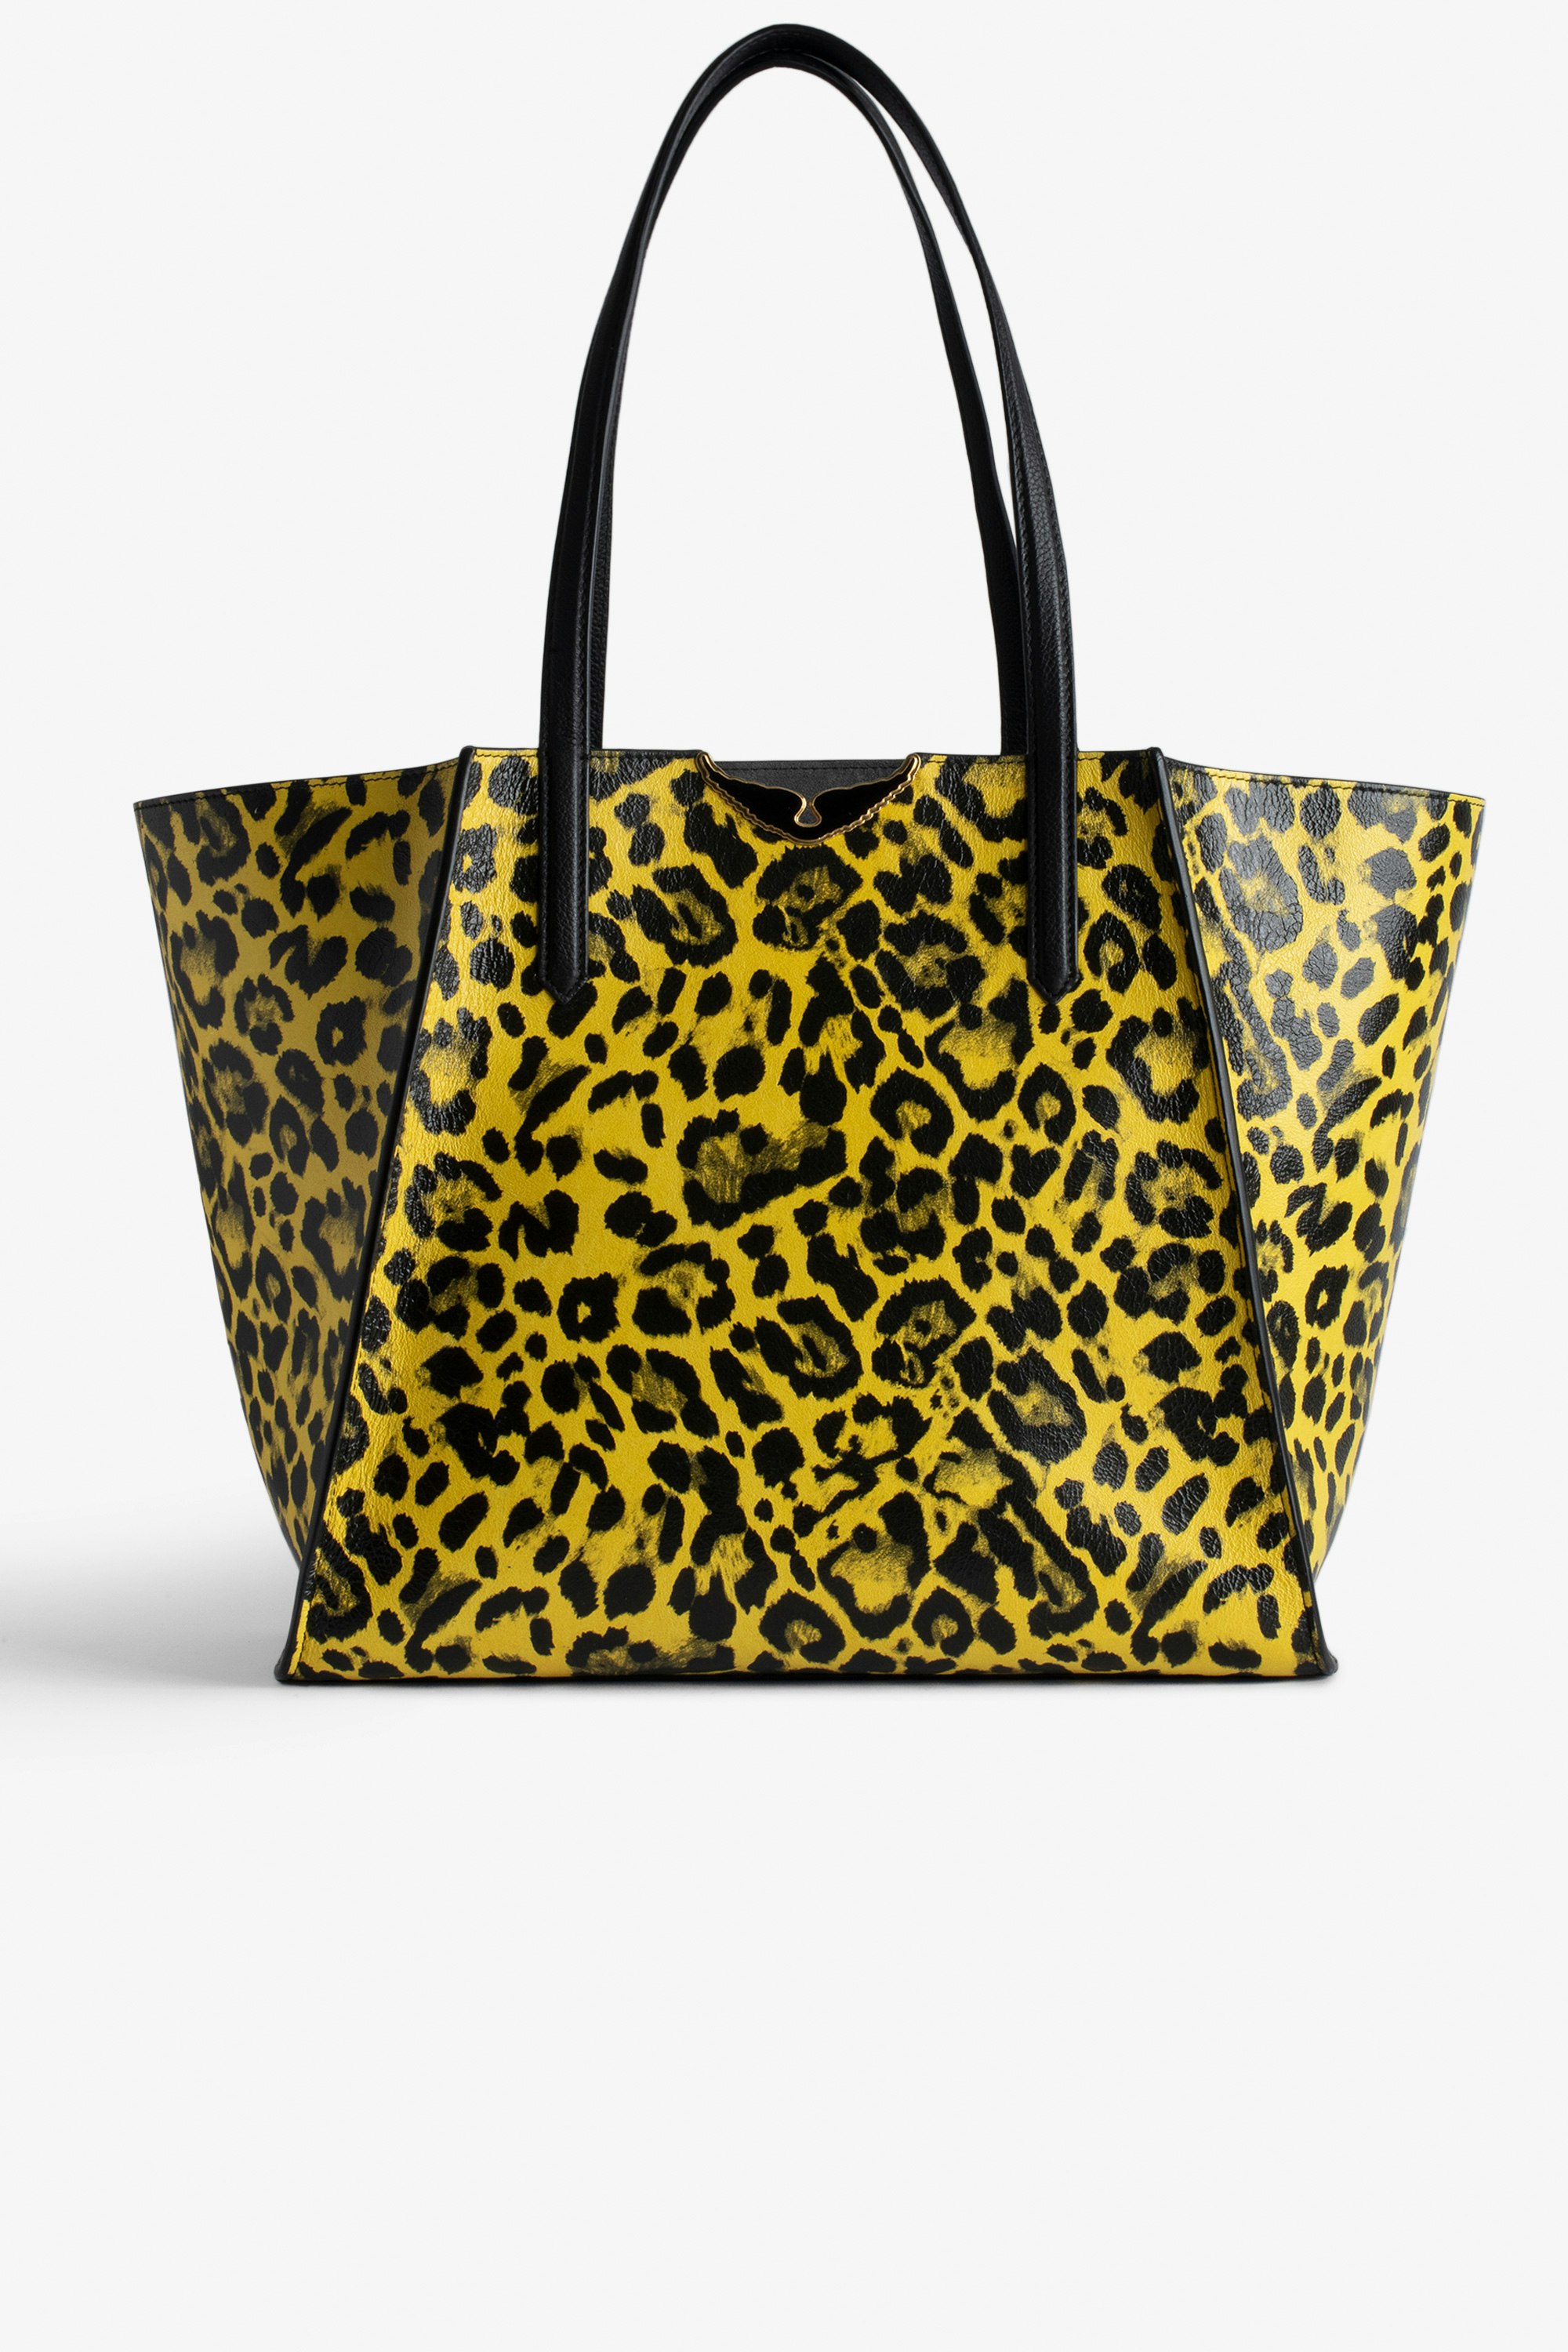 Tasche Le Borderline Leopard - Wendbare Tasche aus gelbem glänzendem Leder mit Leoparden-Print und Henkel und Flügeln aus Metall für Damen.